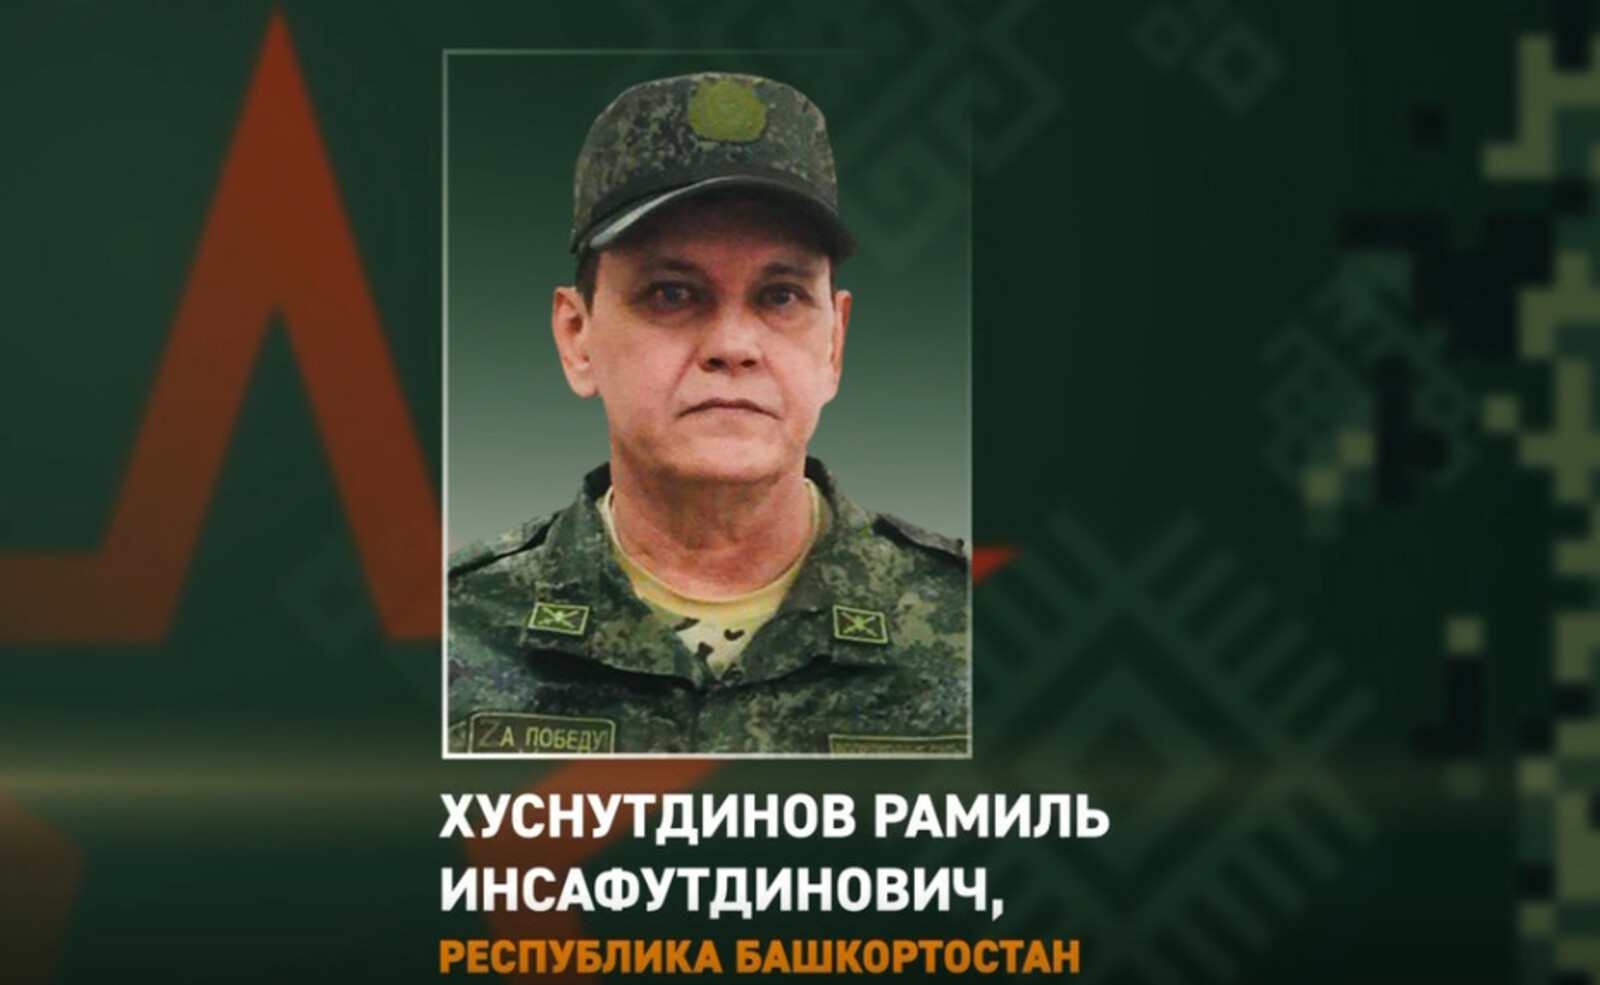 Бойца из Башкирии Рамиля Хуснутдинова наградили медалью «За отвагу»